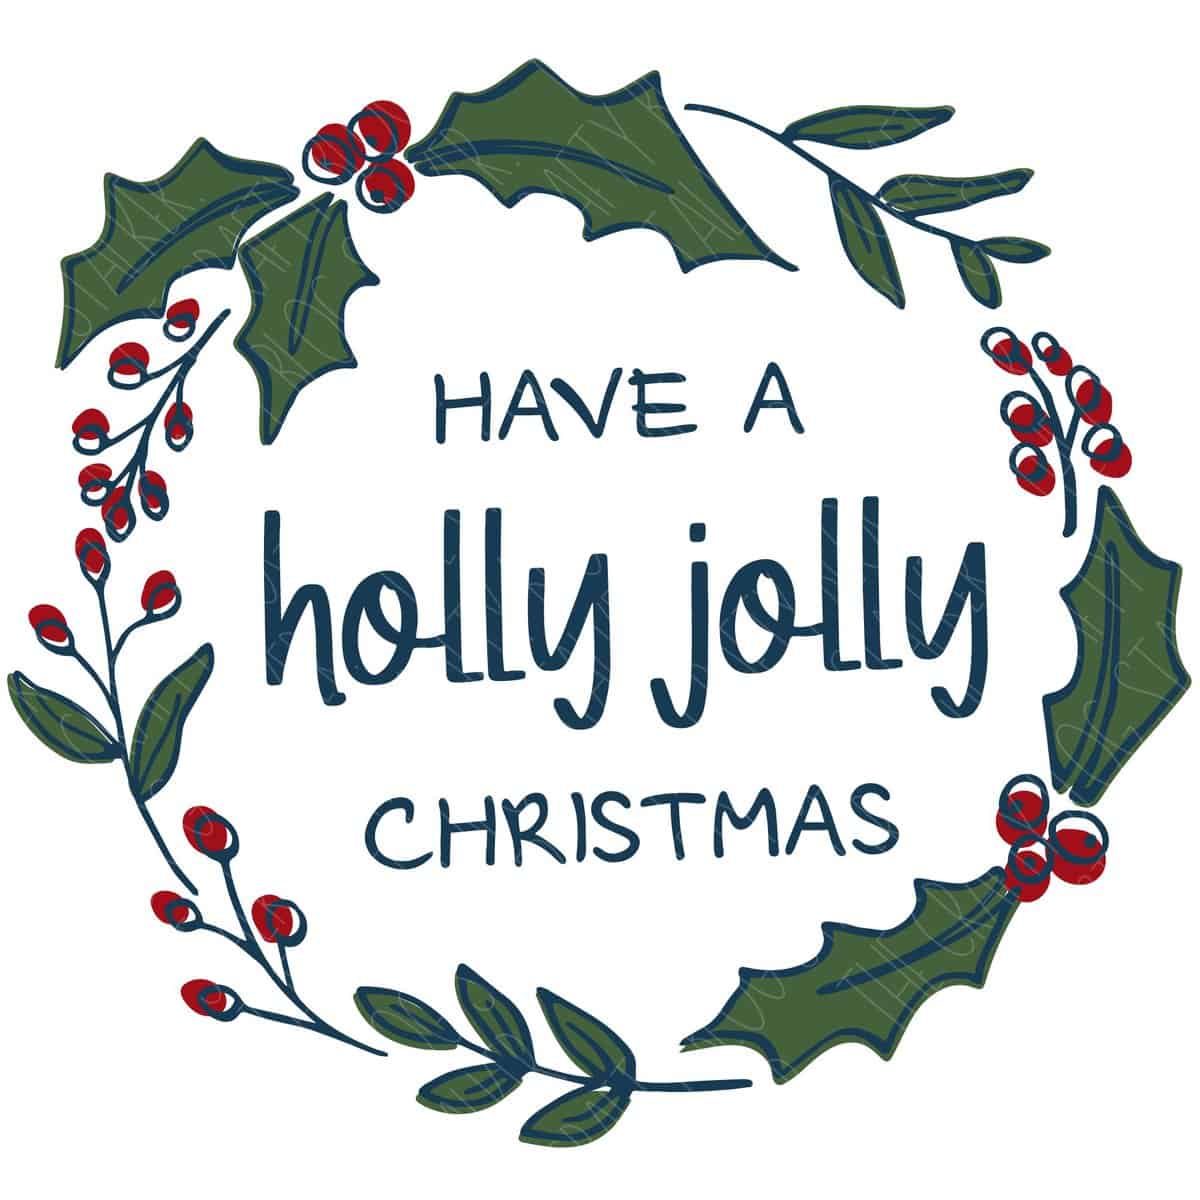 Christmas Holly SVG cut file at